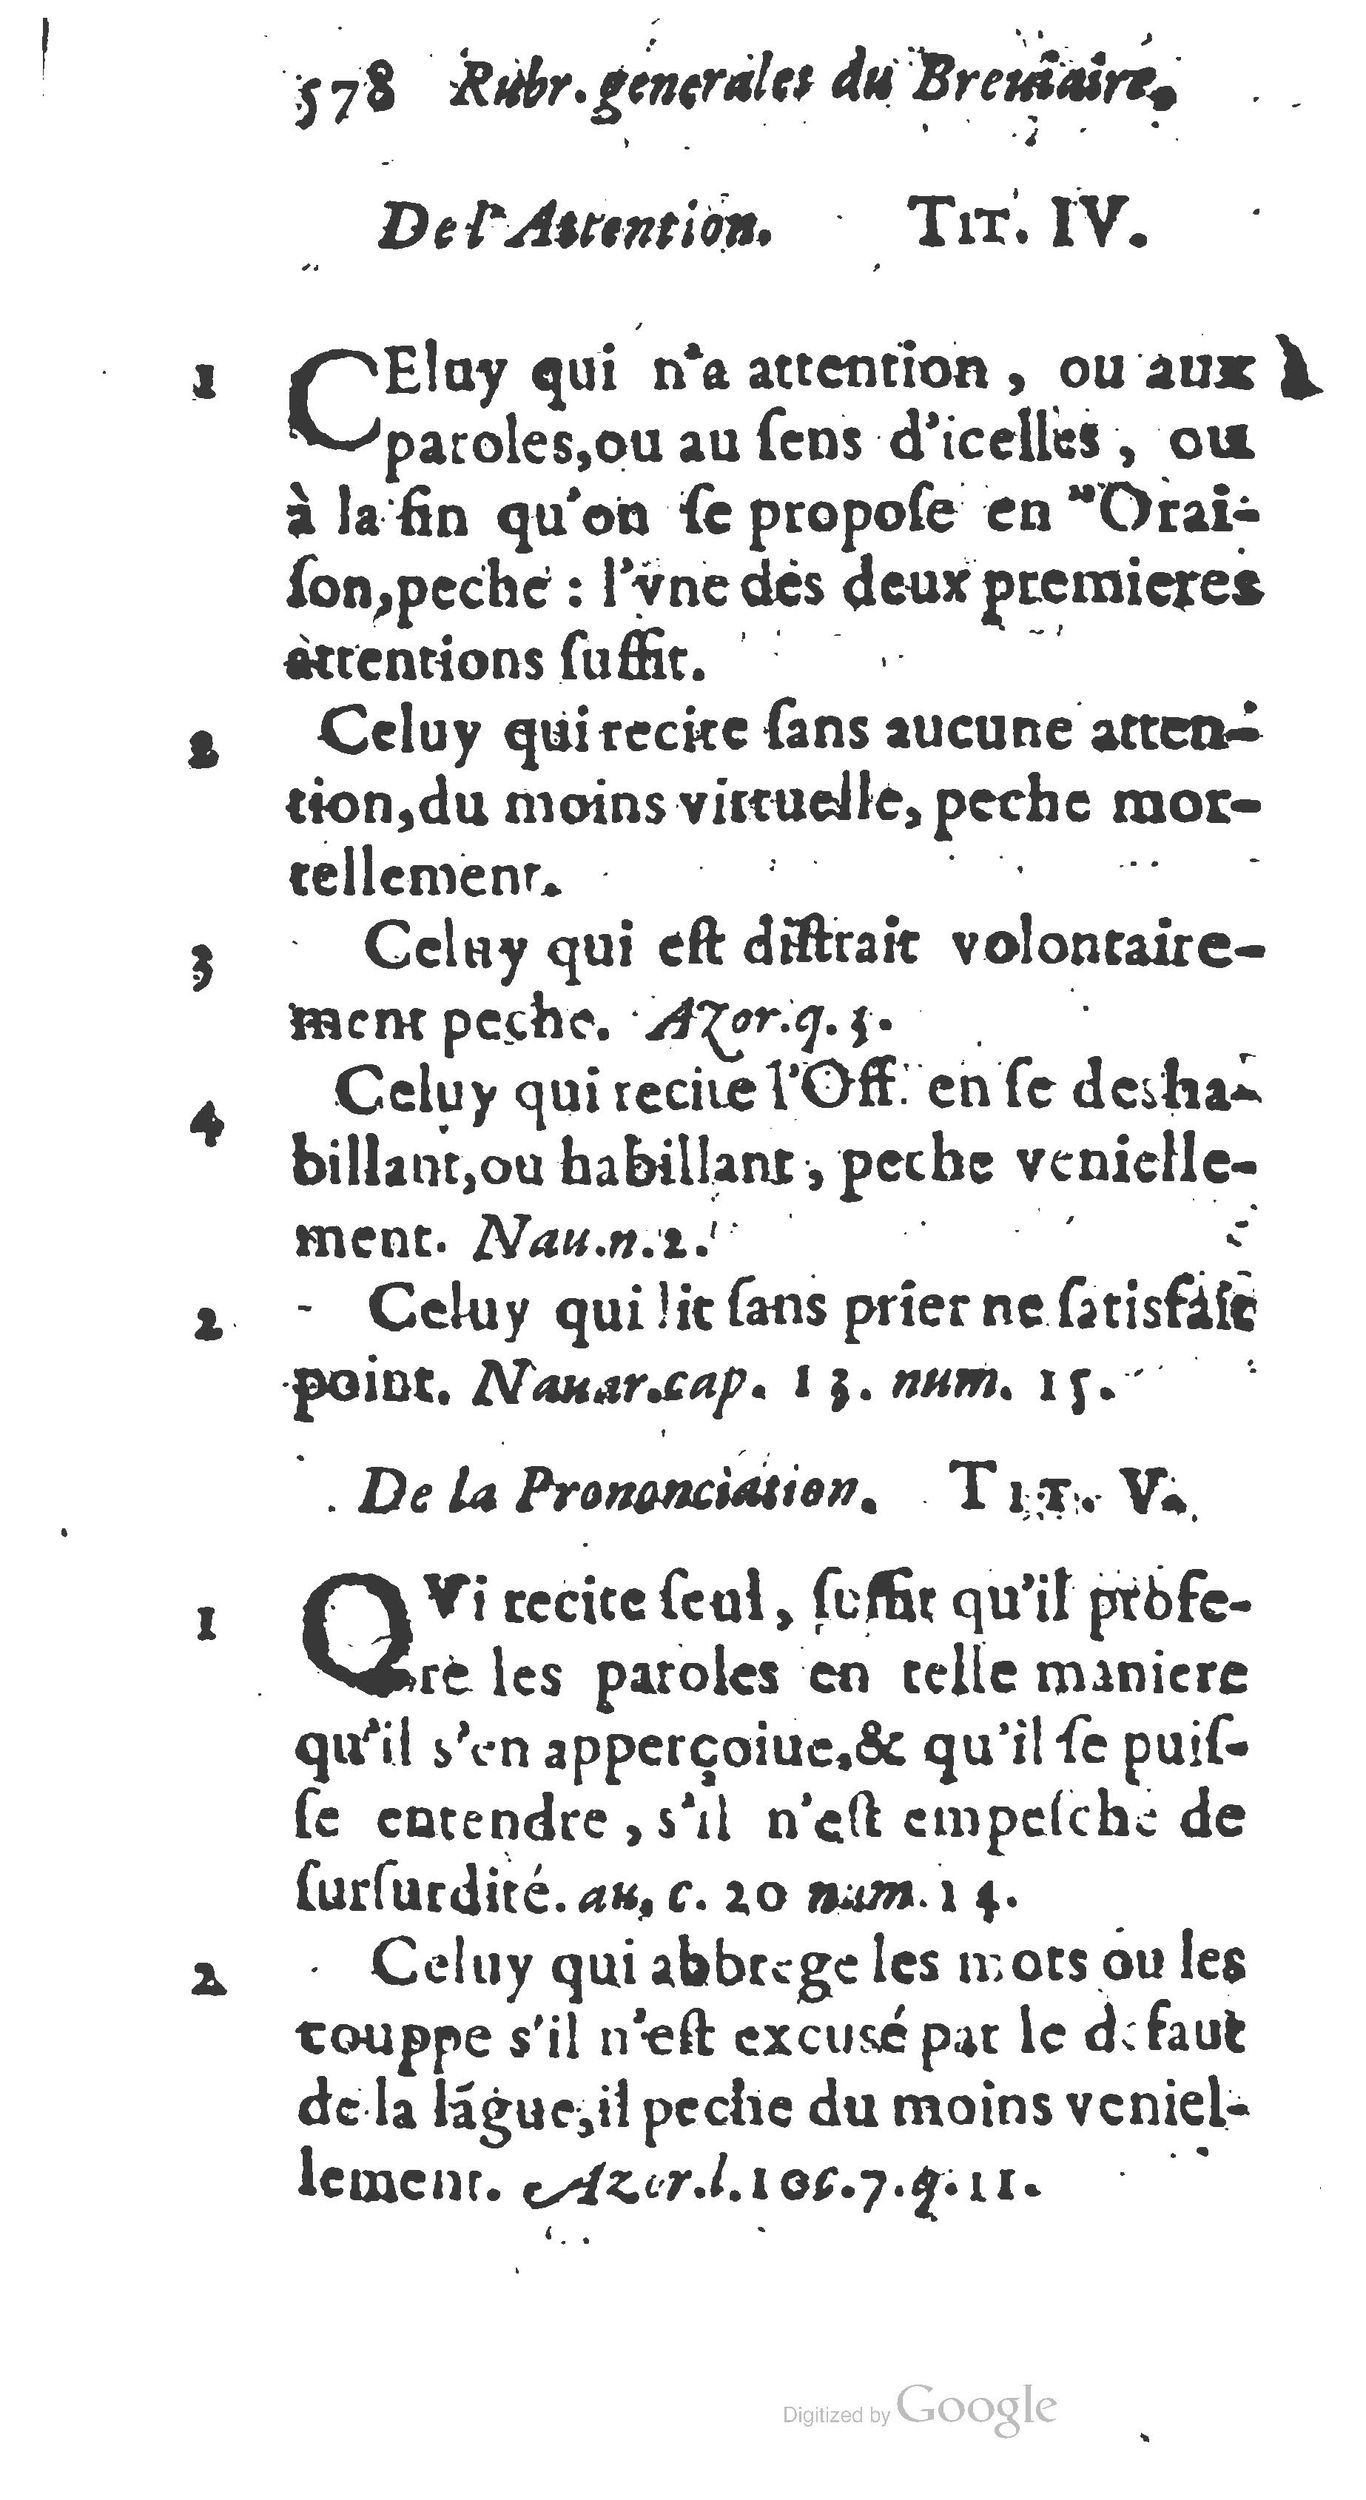 1651 Abrégé du trésor des cérémonies ecclésiastiques Guillermet_BM Lyon_Page_597.jpg